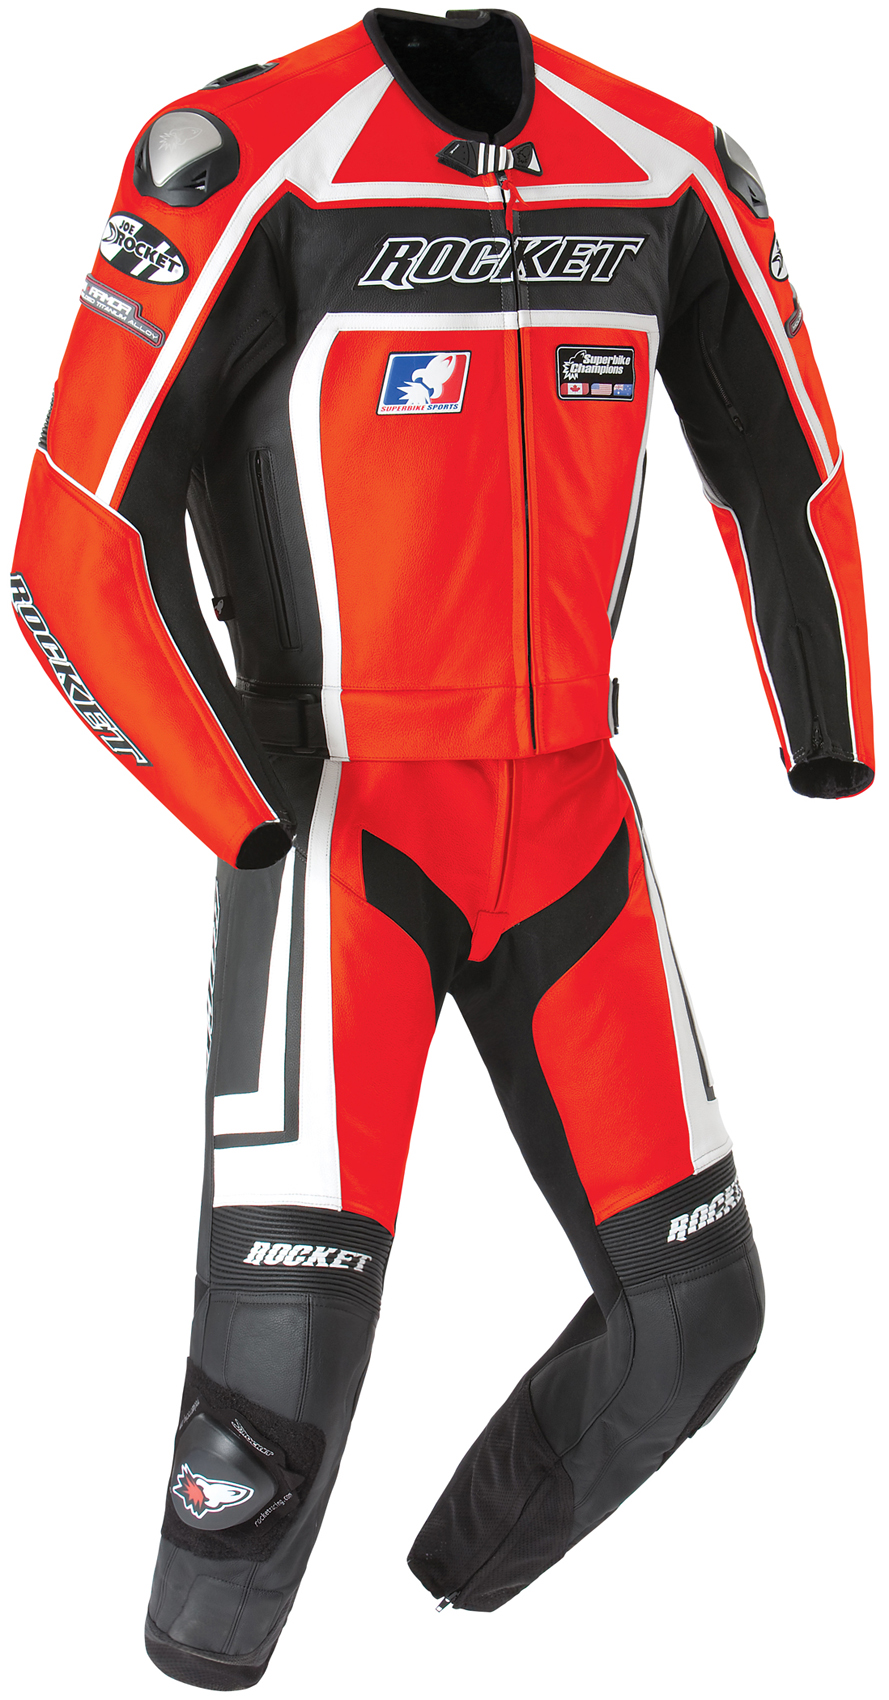 Joe Rocket Speedmaster 5.0 Two-Piece Racing Suit